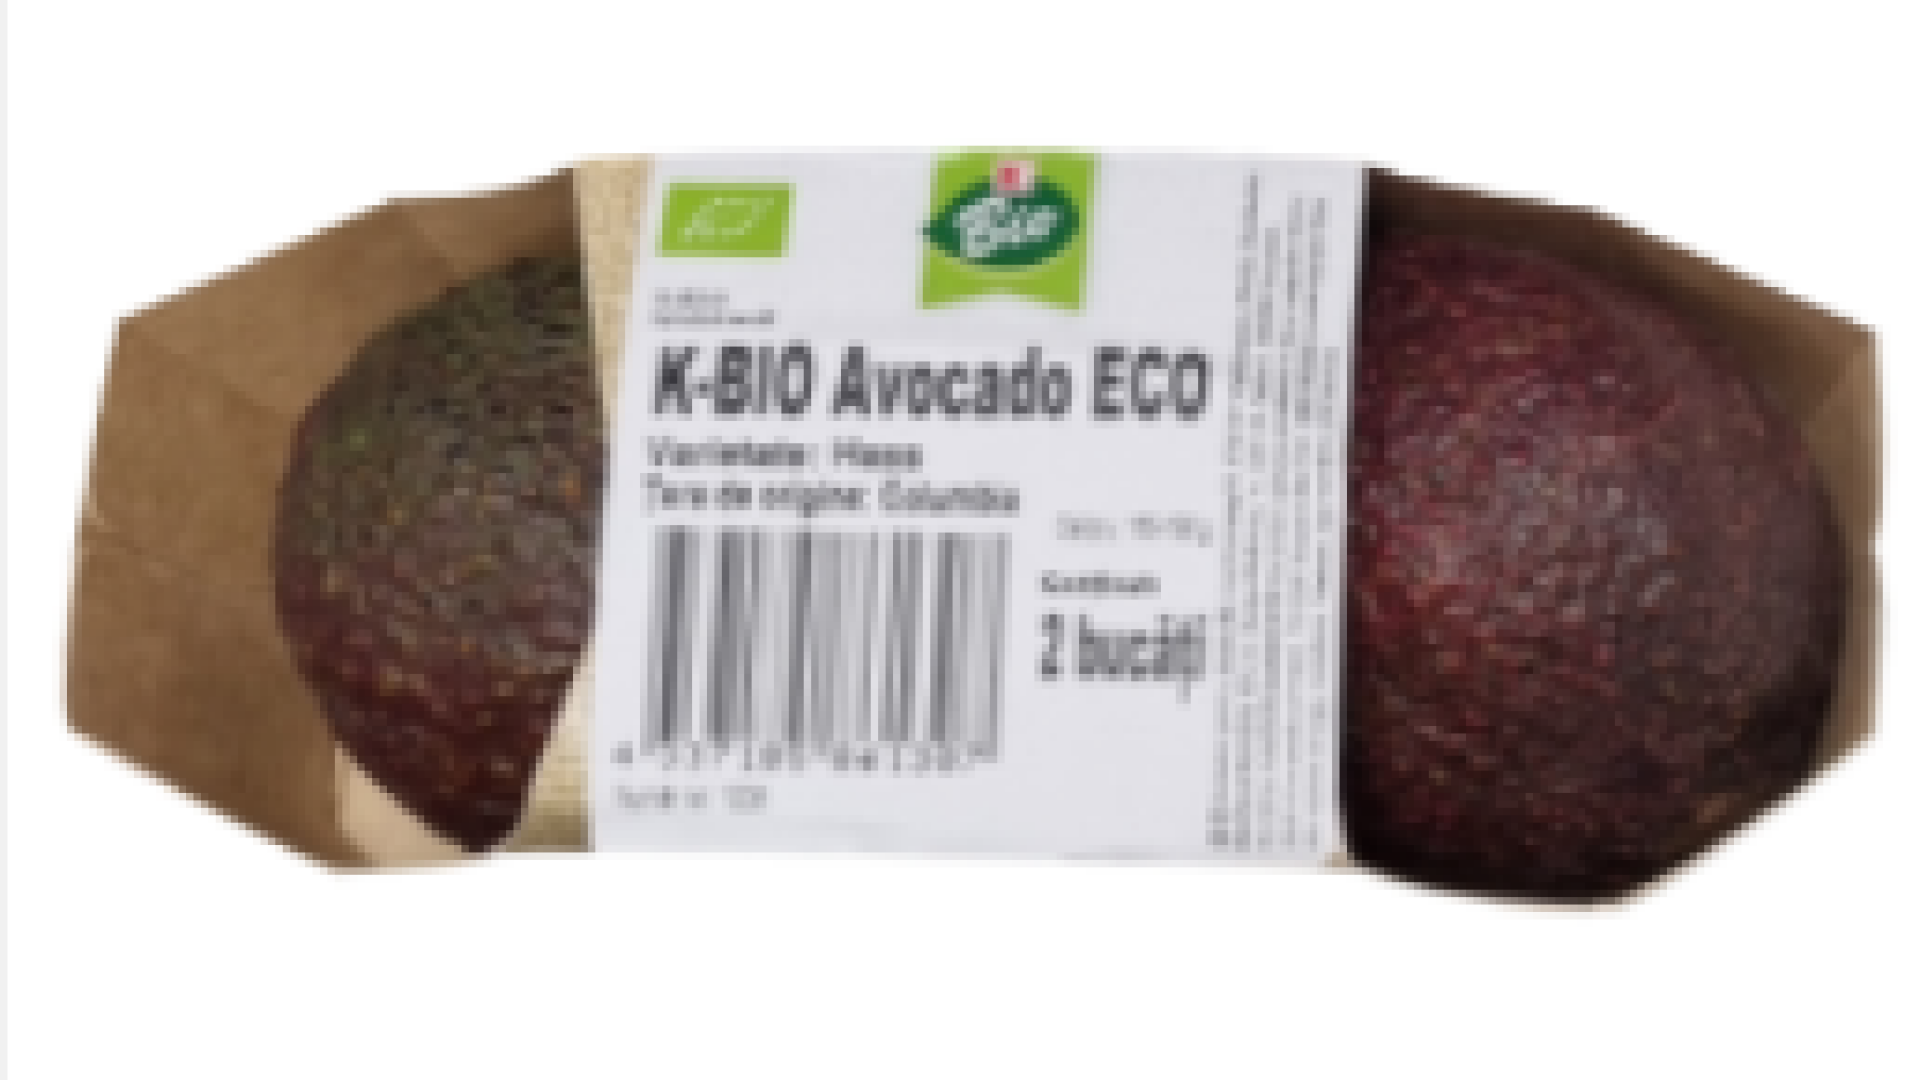 Kaufland a retras de la vânzare un lot de avocado la care s-a depistat concentraţie prea mare de pesticide